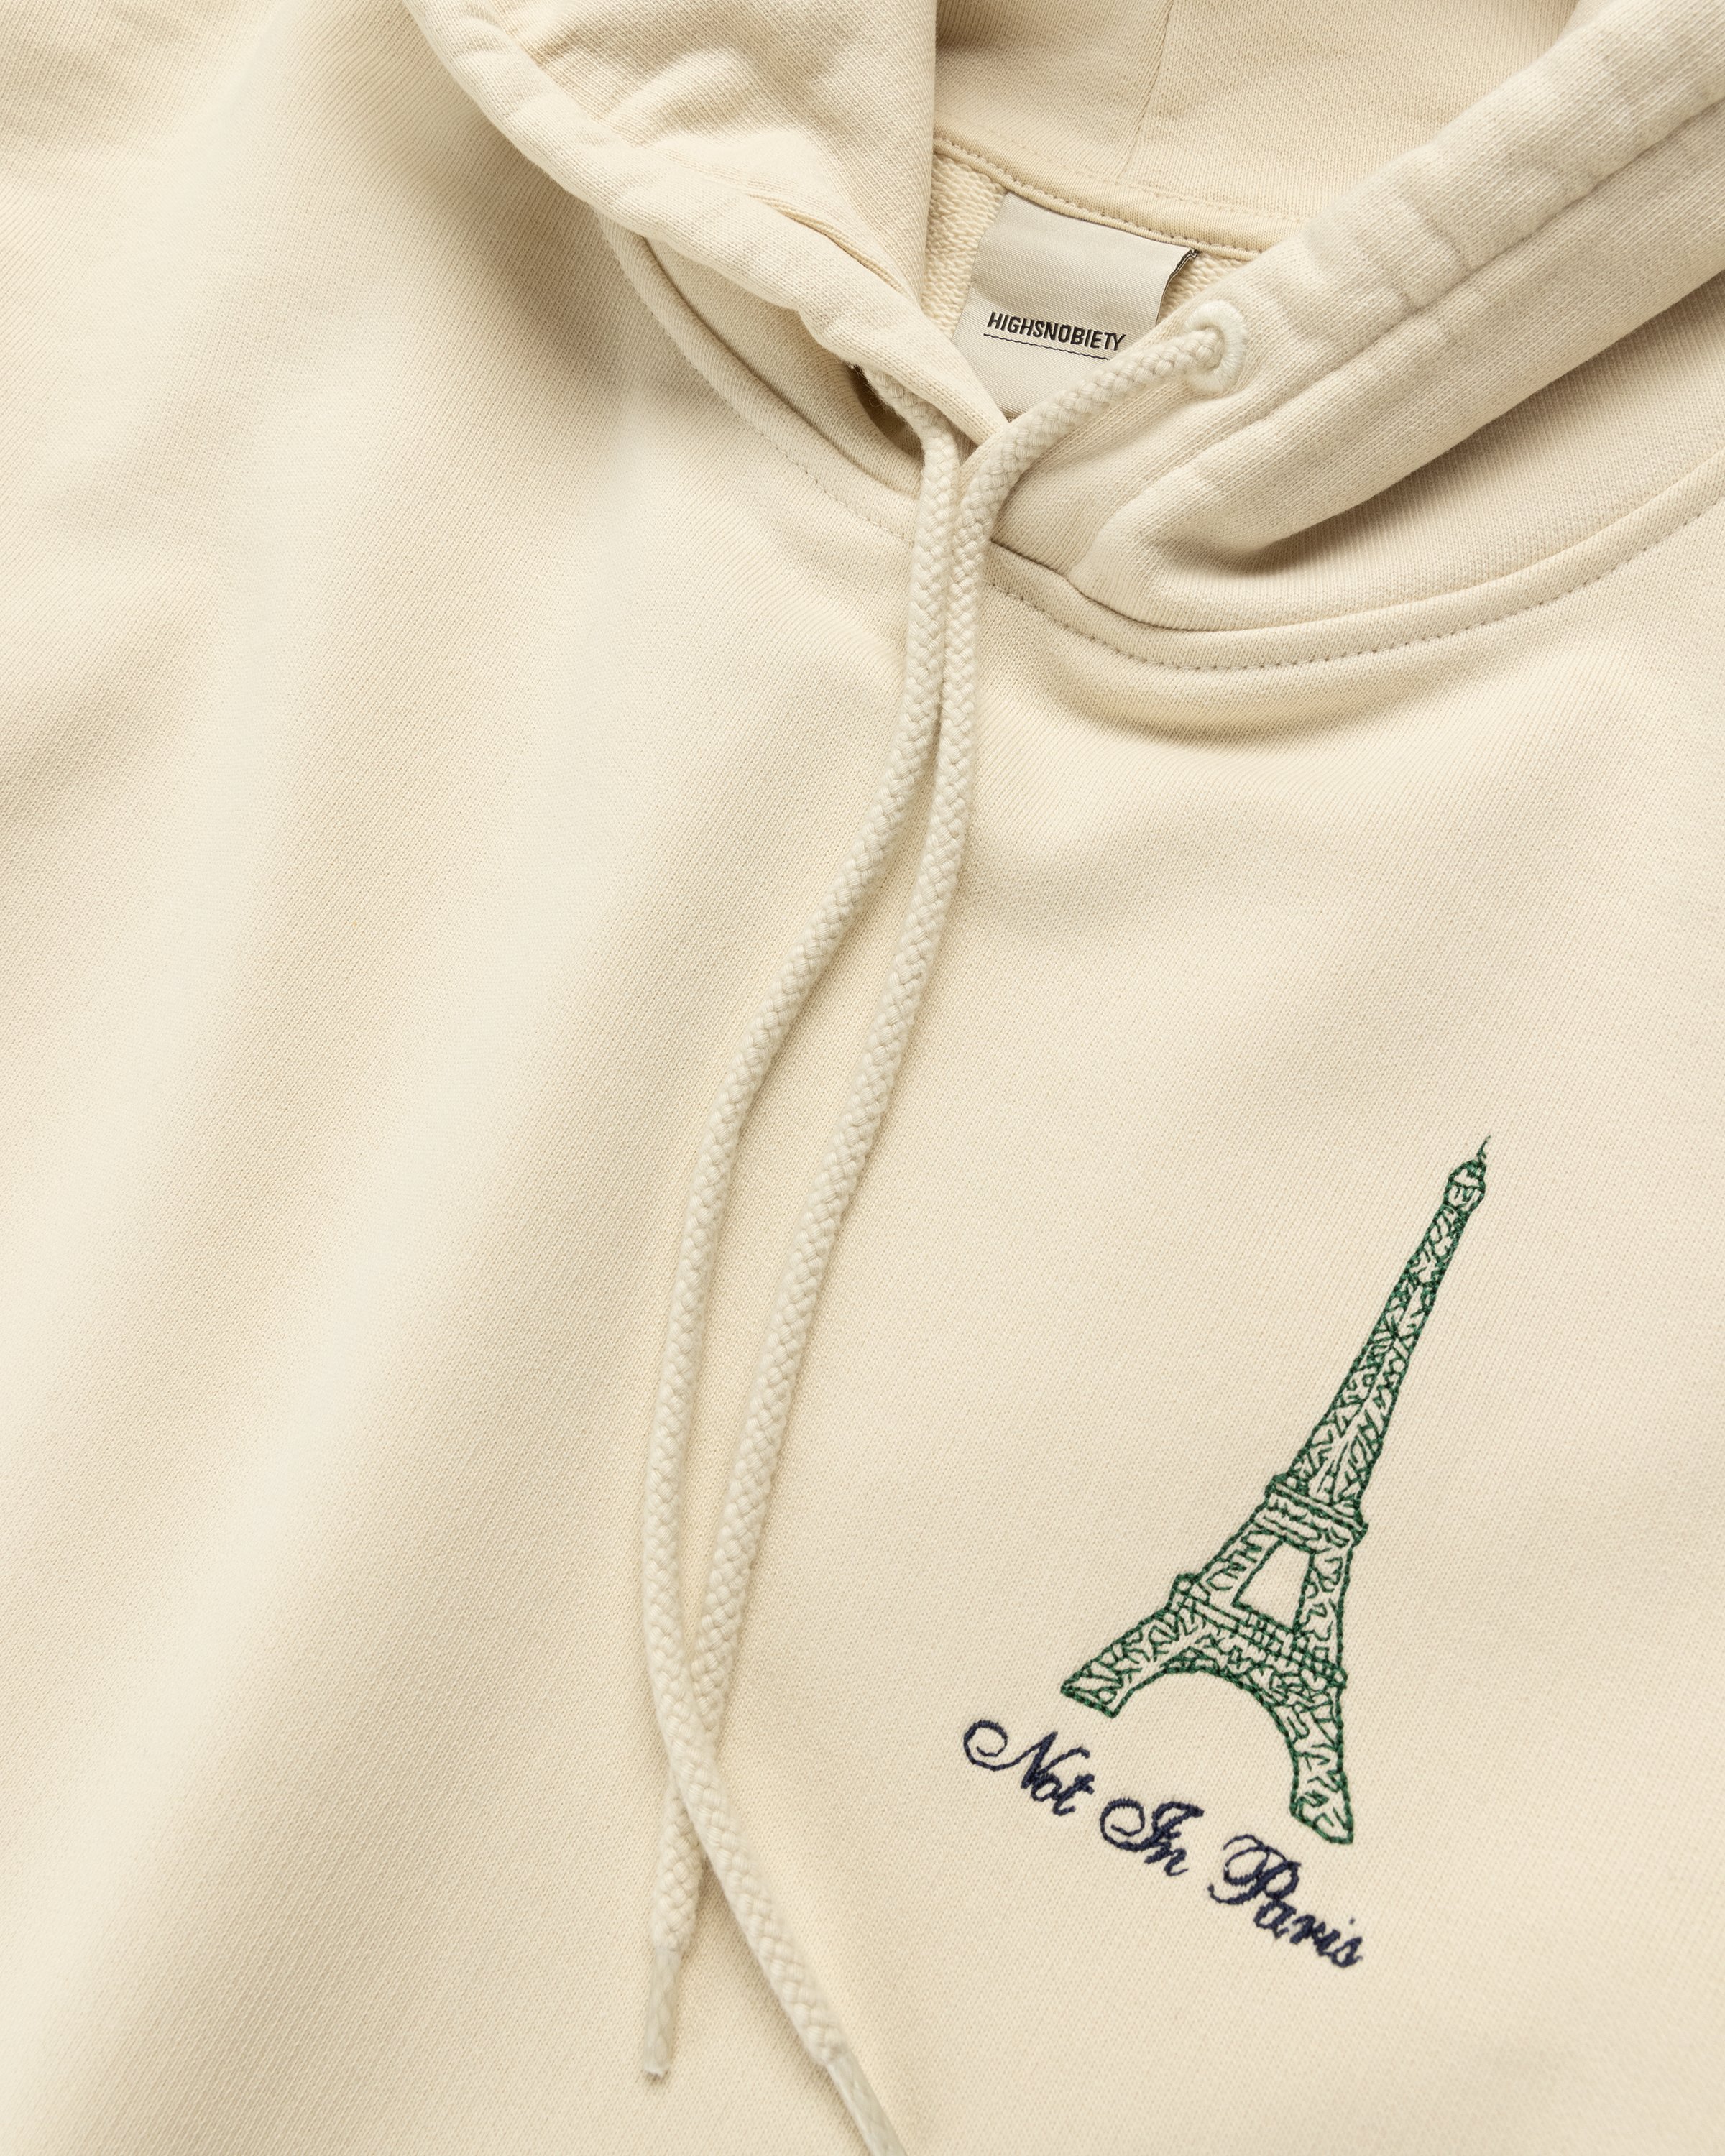 Highsnobiety - Not In Paris 4 Eiffel Tower Hoodie Eggshell - Clothing - Beige - Image 4